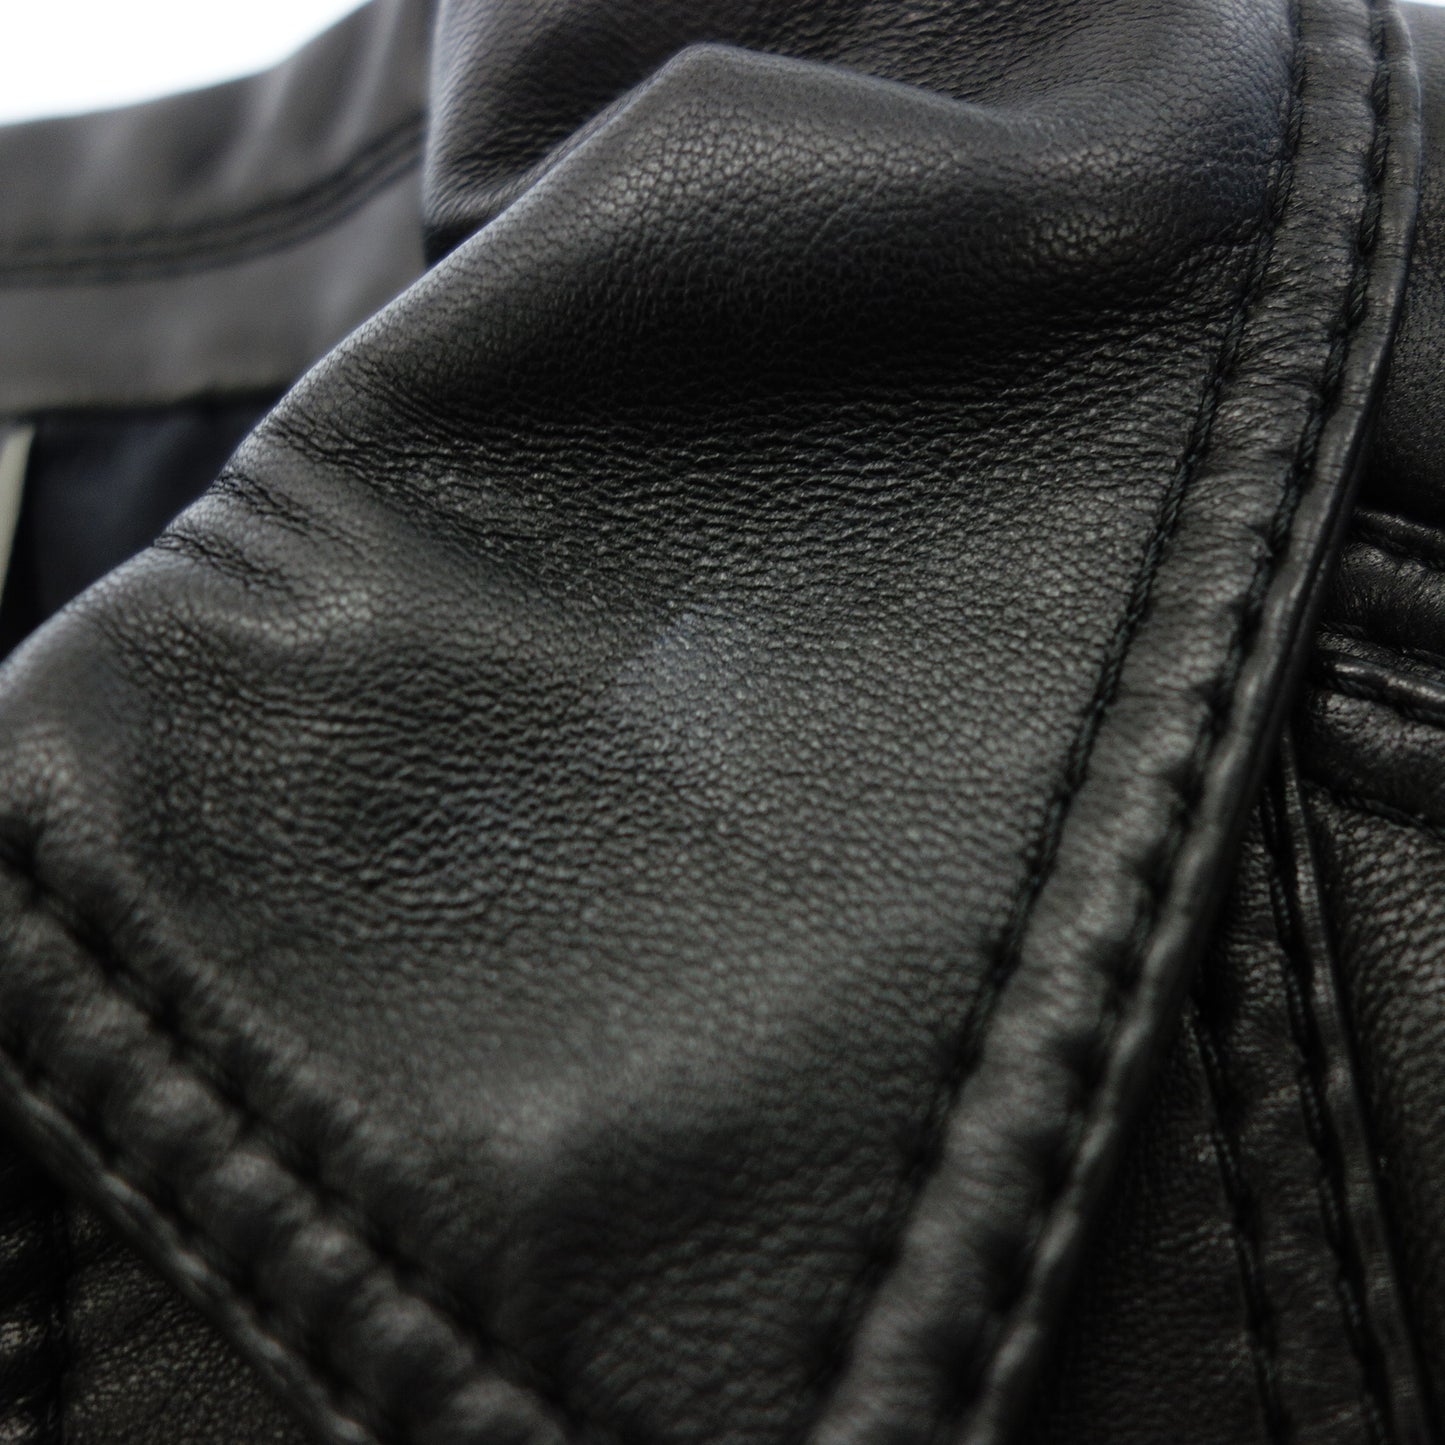 状况非常好◆Dior Homme 单骑手夹克袖子分离小羊皮尺寸 38 法国制造男士黑色 Dior homme [AFG1] 